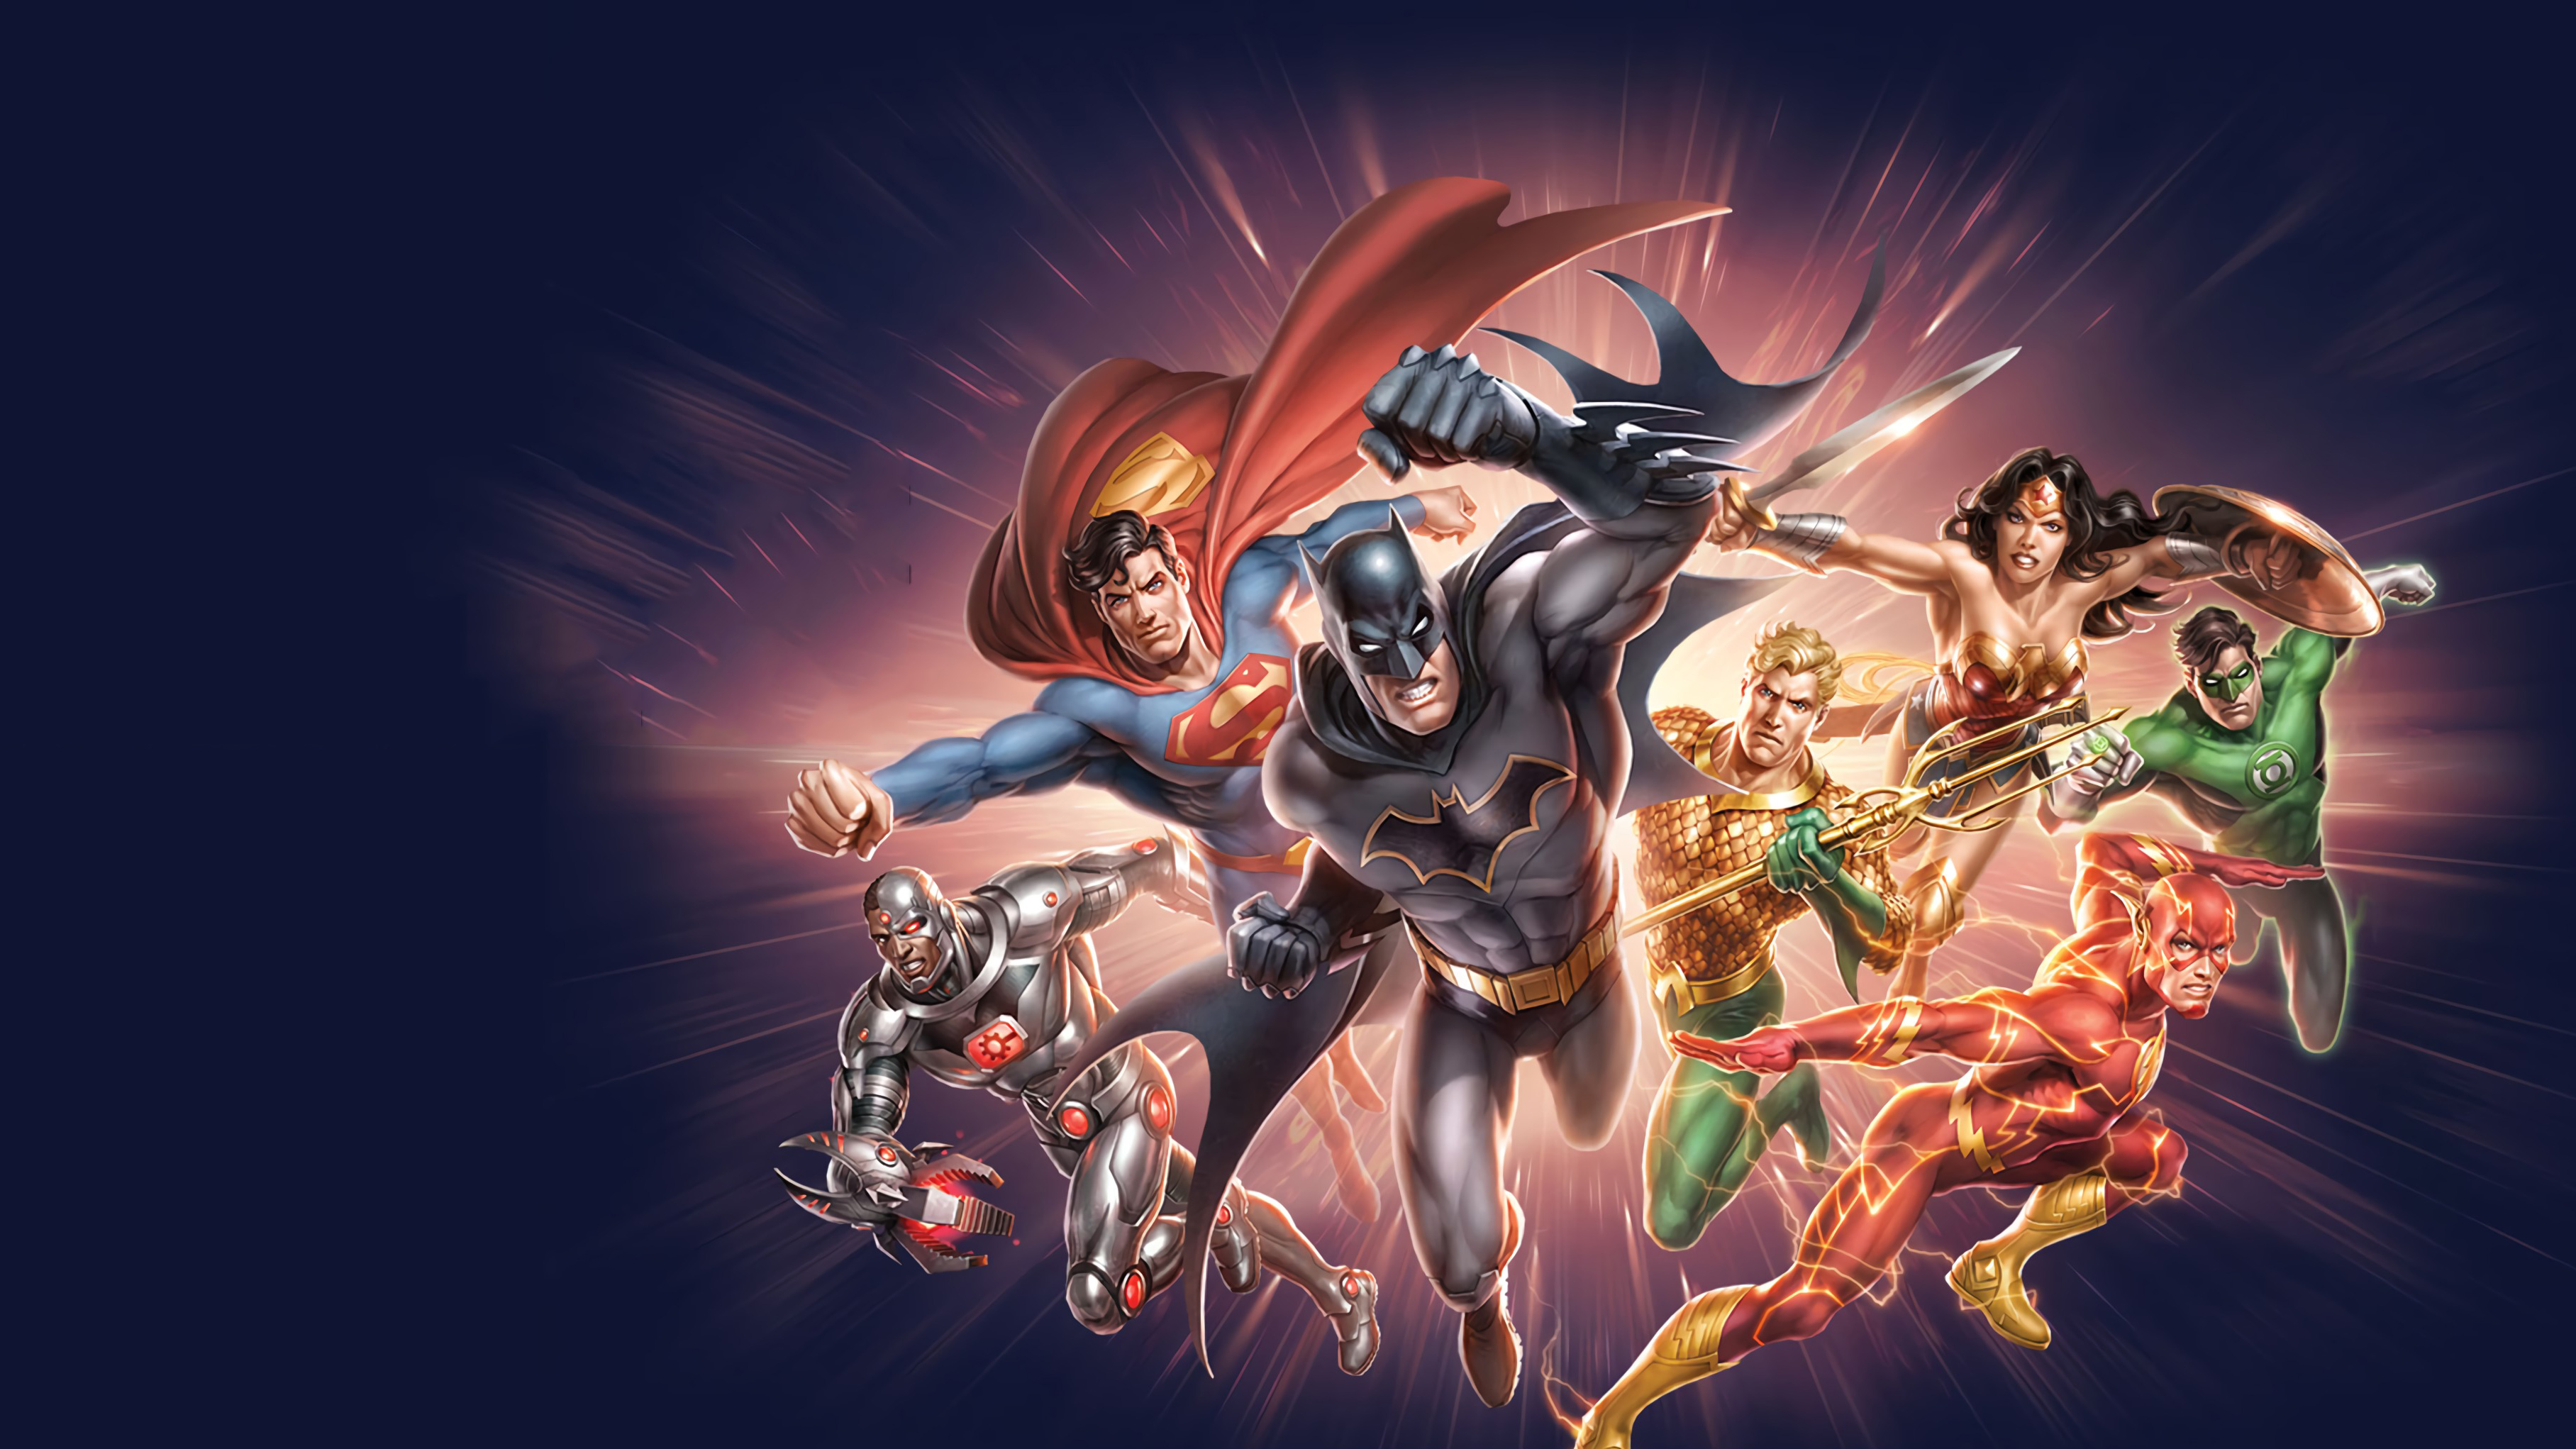 Descarga gratuita de fondo de pantalla para móvil de Superhombre, Destello, Historietas, Dc Comics, Hombre Murciélago, Linterna Verde, Hal Jordan, Aquamán, La Mujer Maravilla, Cyborg (Dc Cómics), Liga De La Justicia, Barry Allen.